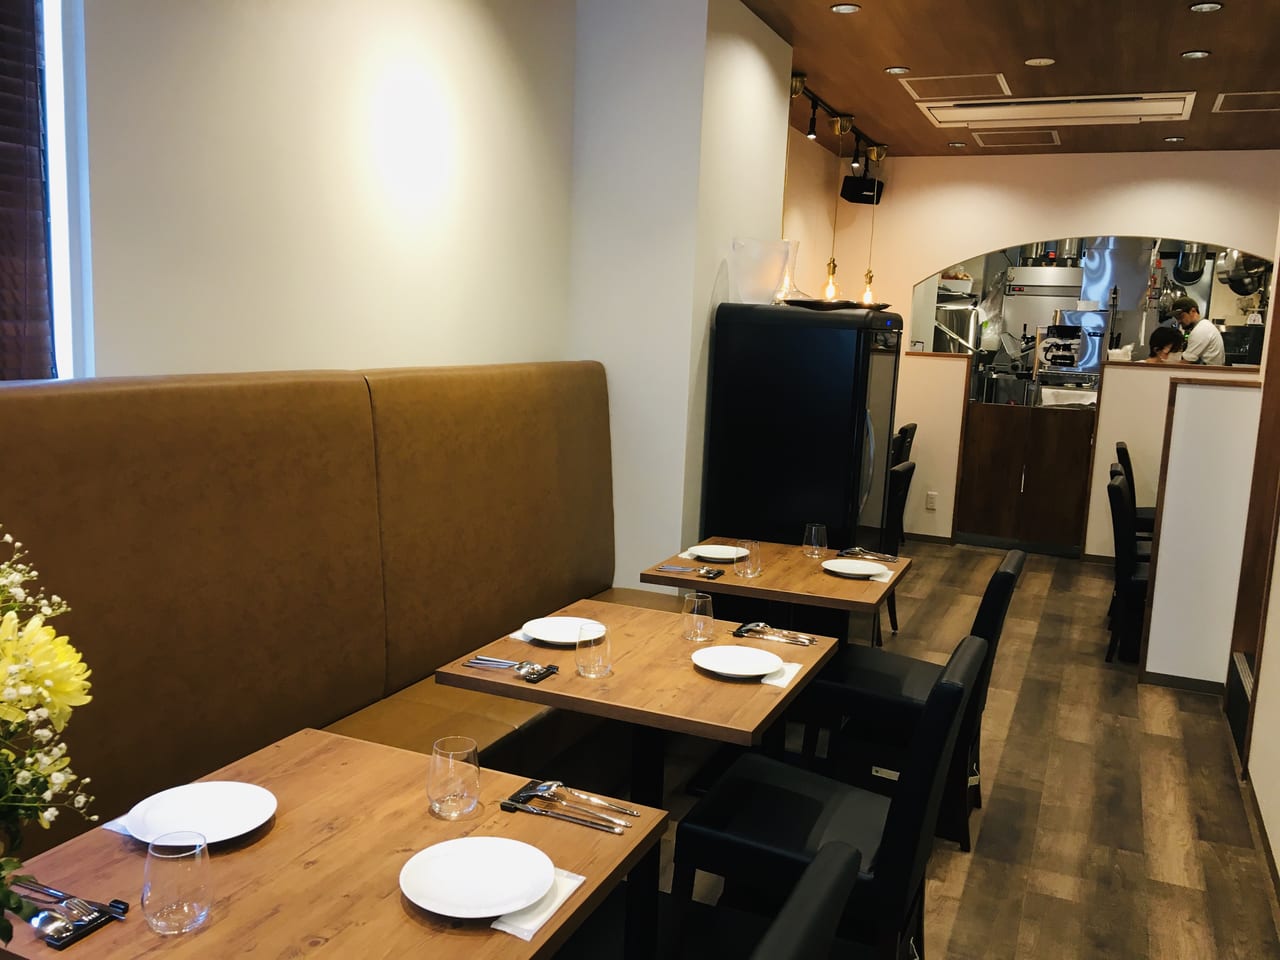 和光市 本田技研すぐ近くに 素敵なイタリアンレストラン Acatui がオープン テイクアウトも豊富に用意 号外net 朝霞市 和光市